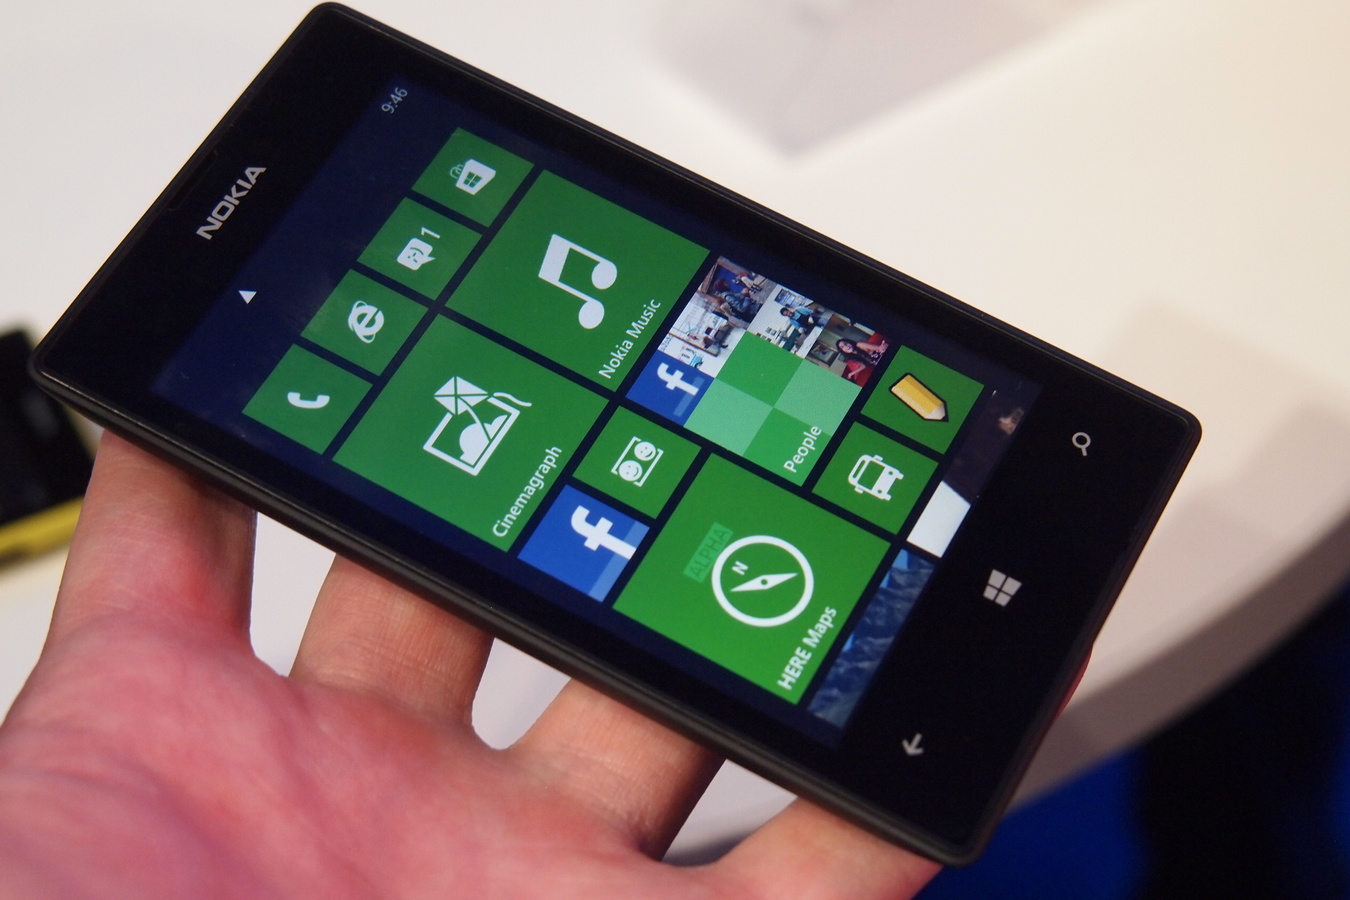 Começa a ser vendido o Nokia Lumia 520 no Brasil